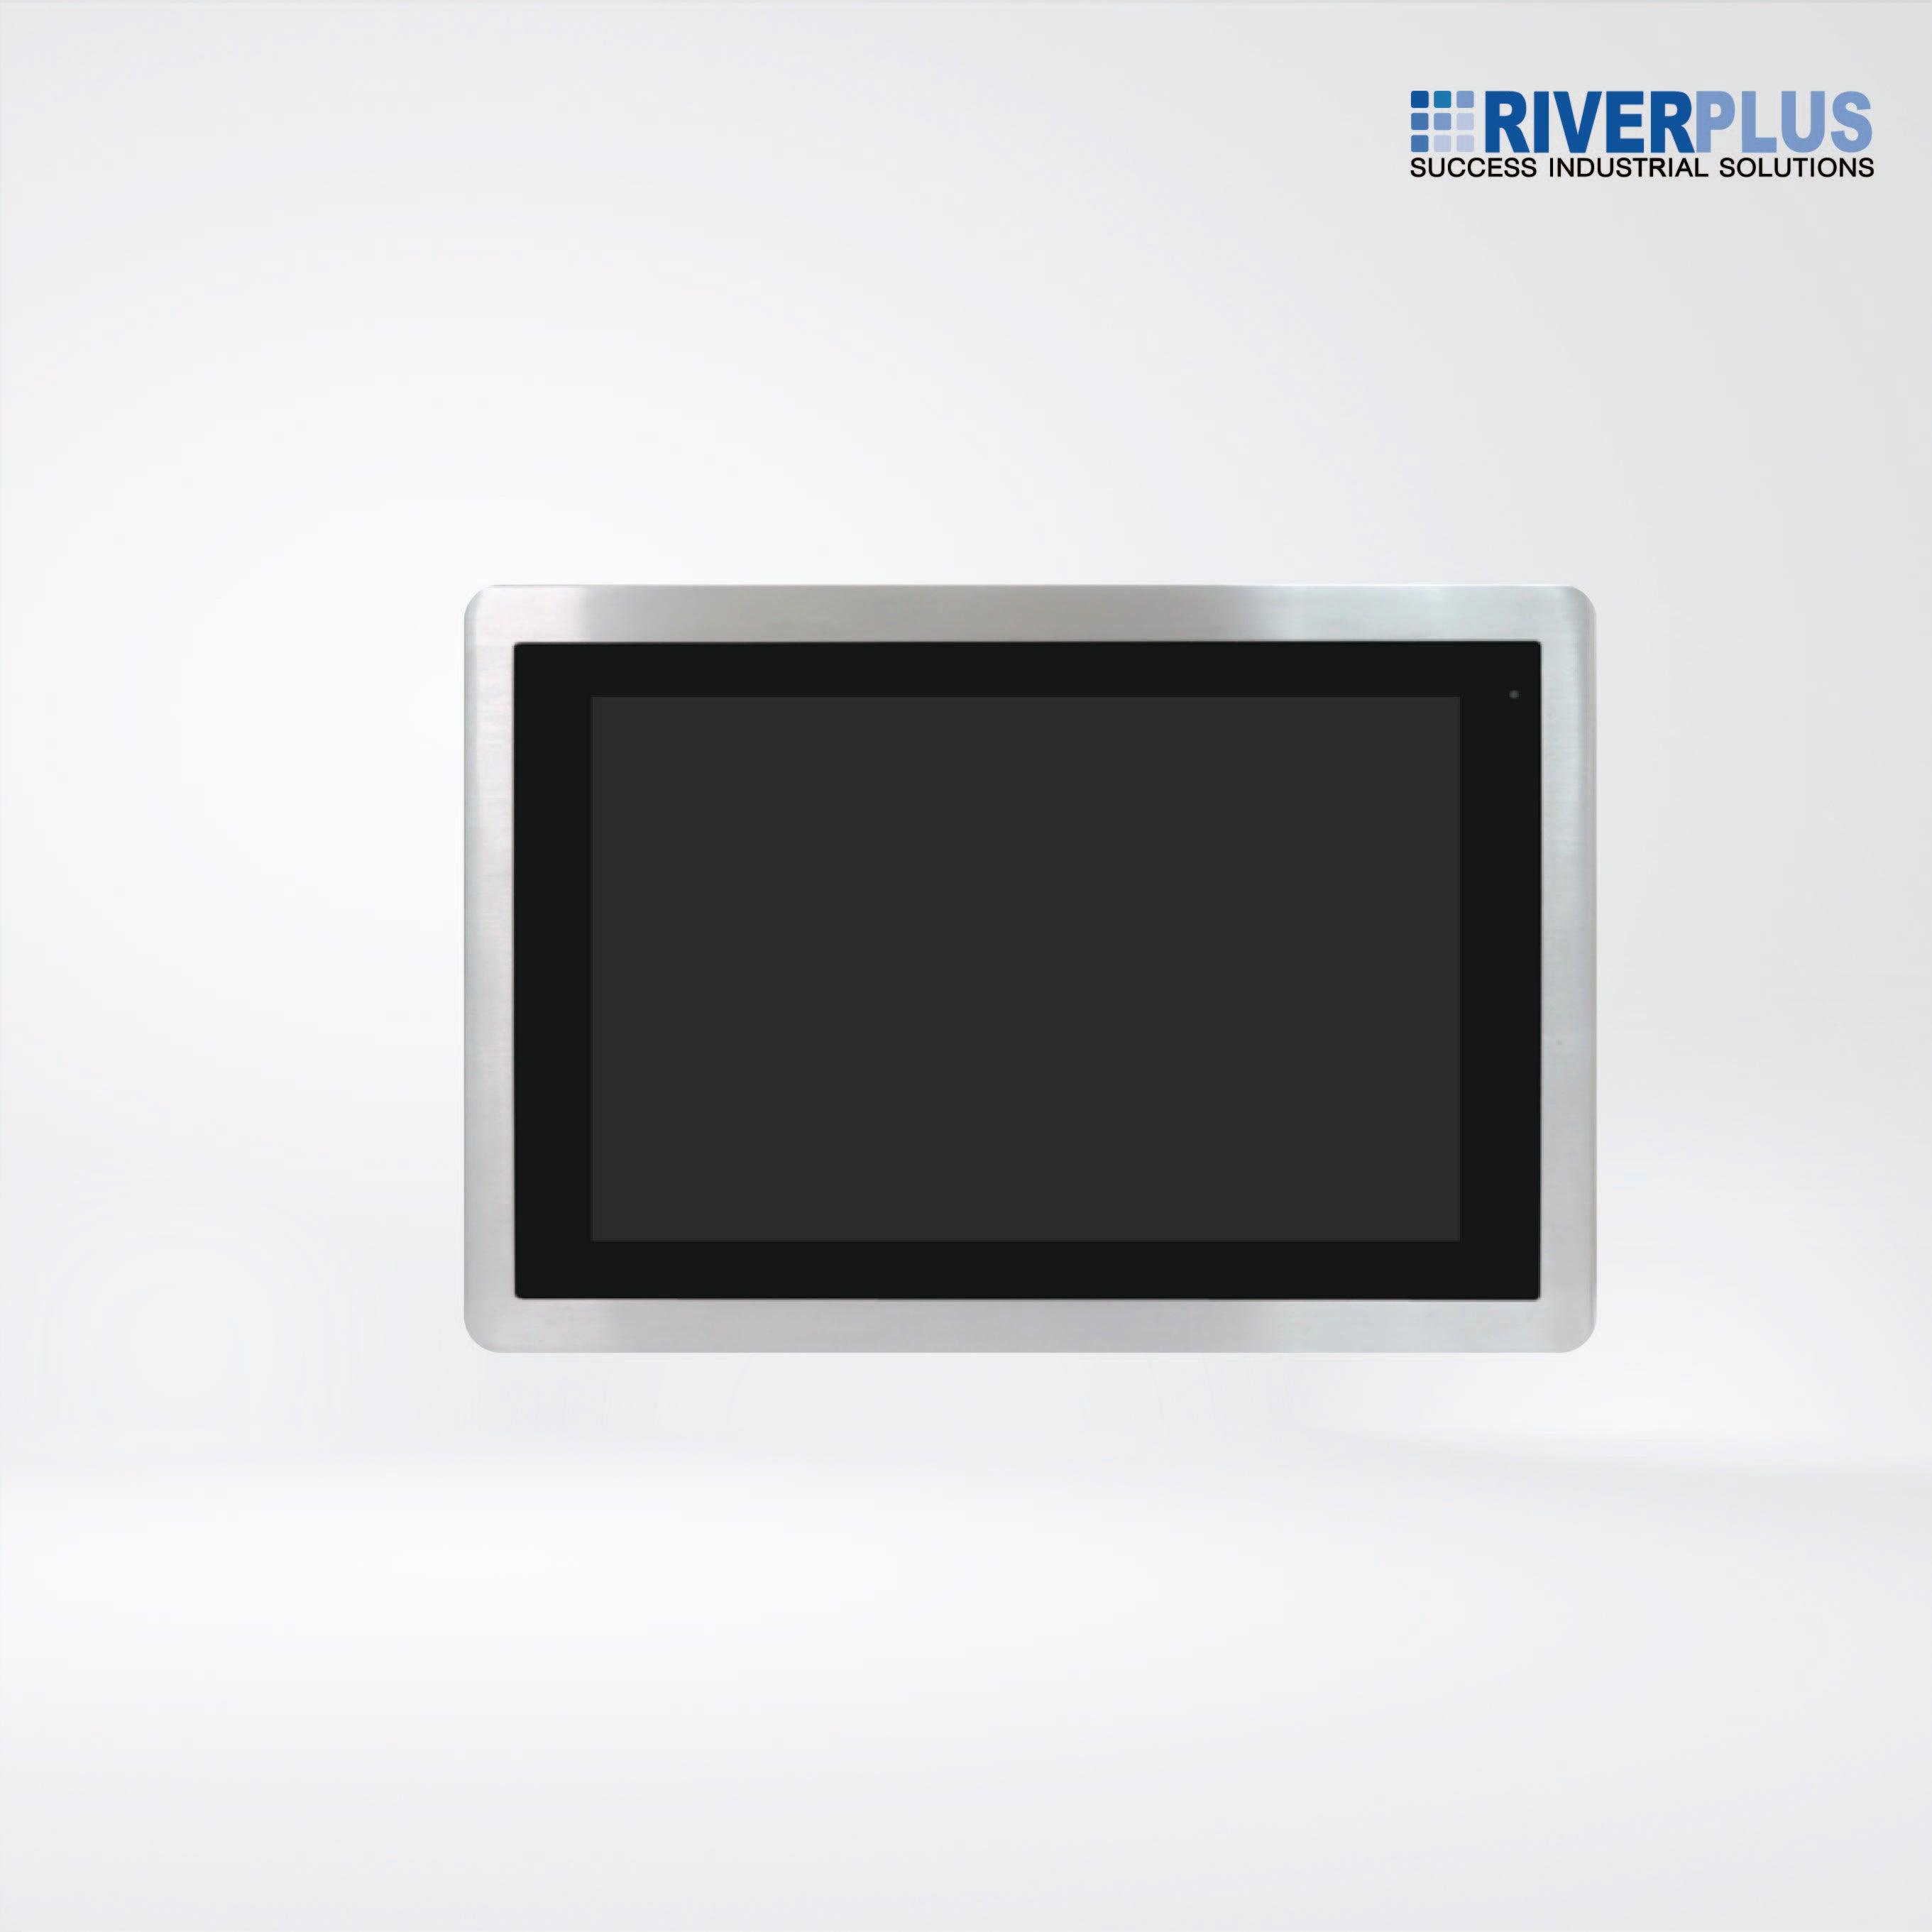 ViTAM-116PH 15.6″ New Gen. IP66/IP69K Stainless Steel Display - Riverplus